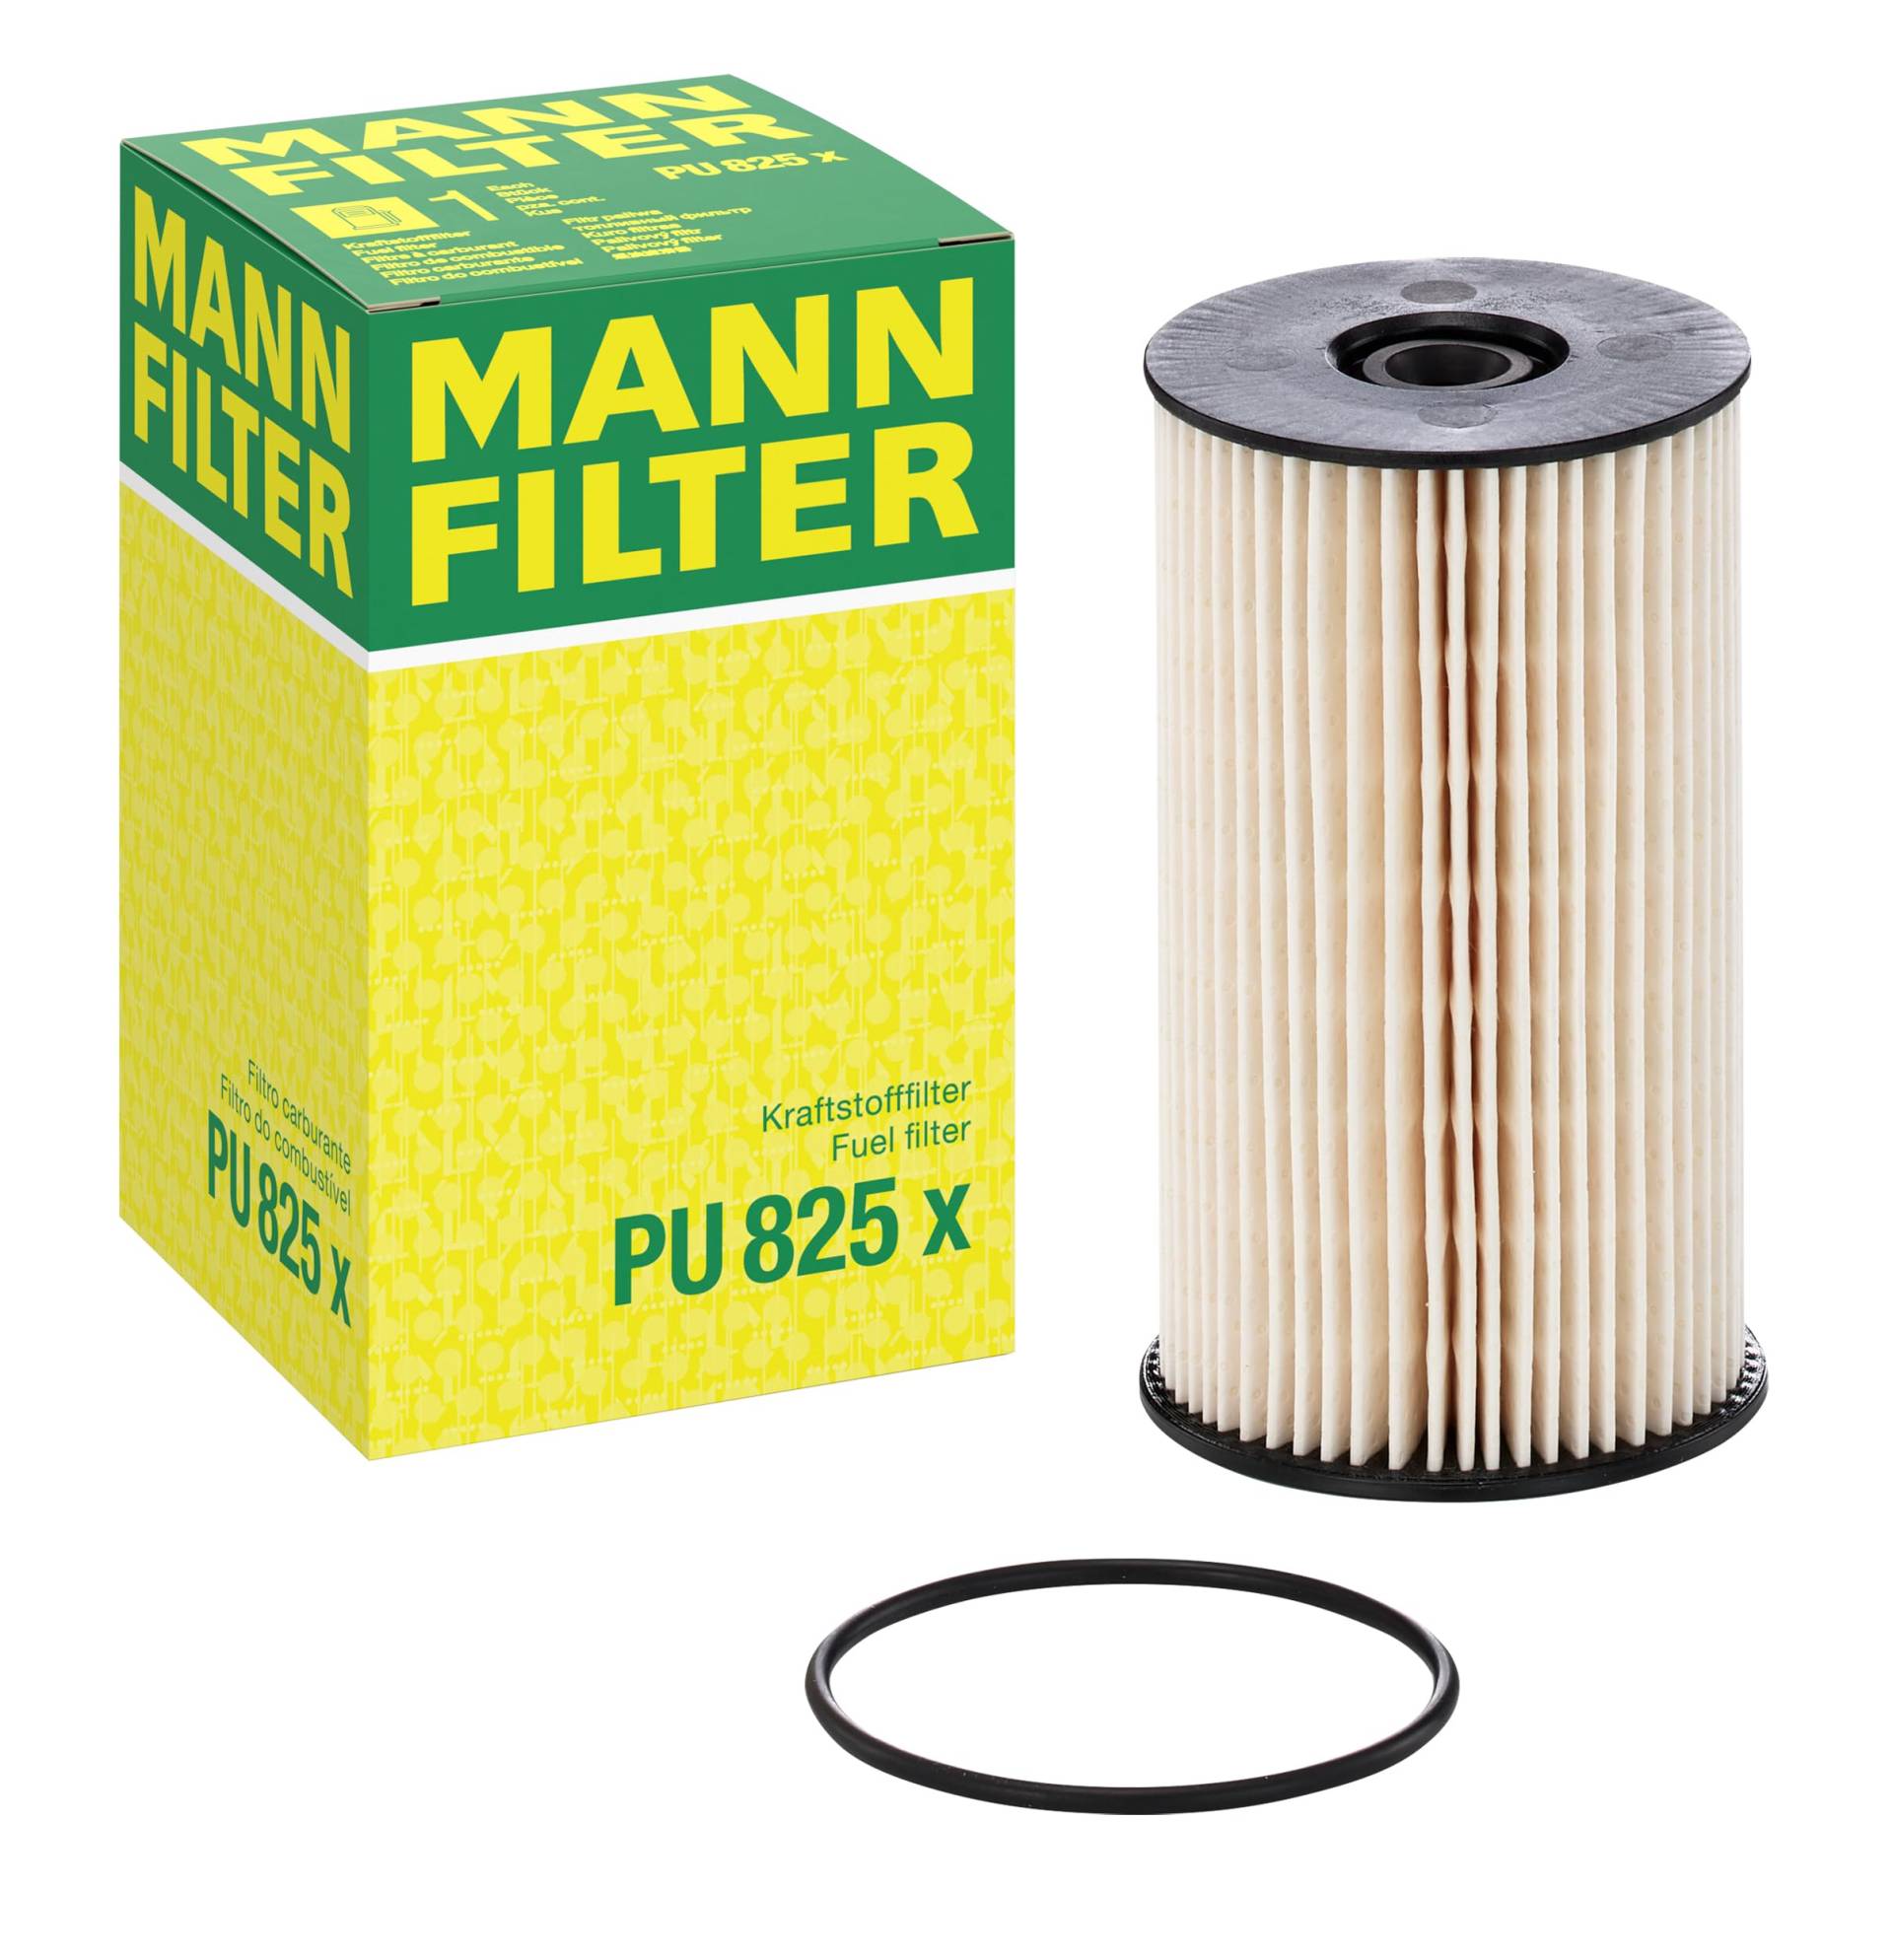 MANN-FILTER PU 825 X Kraftstofffilter – Kraftstofffilter Satz mit Dichtung / Dichtungssatz – Für PKW von MANN-FILTER